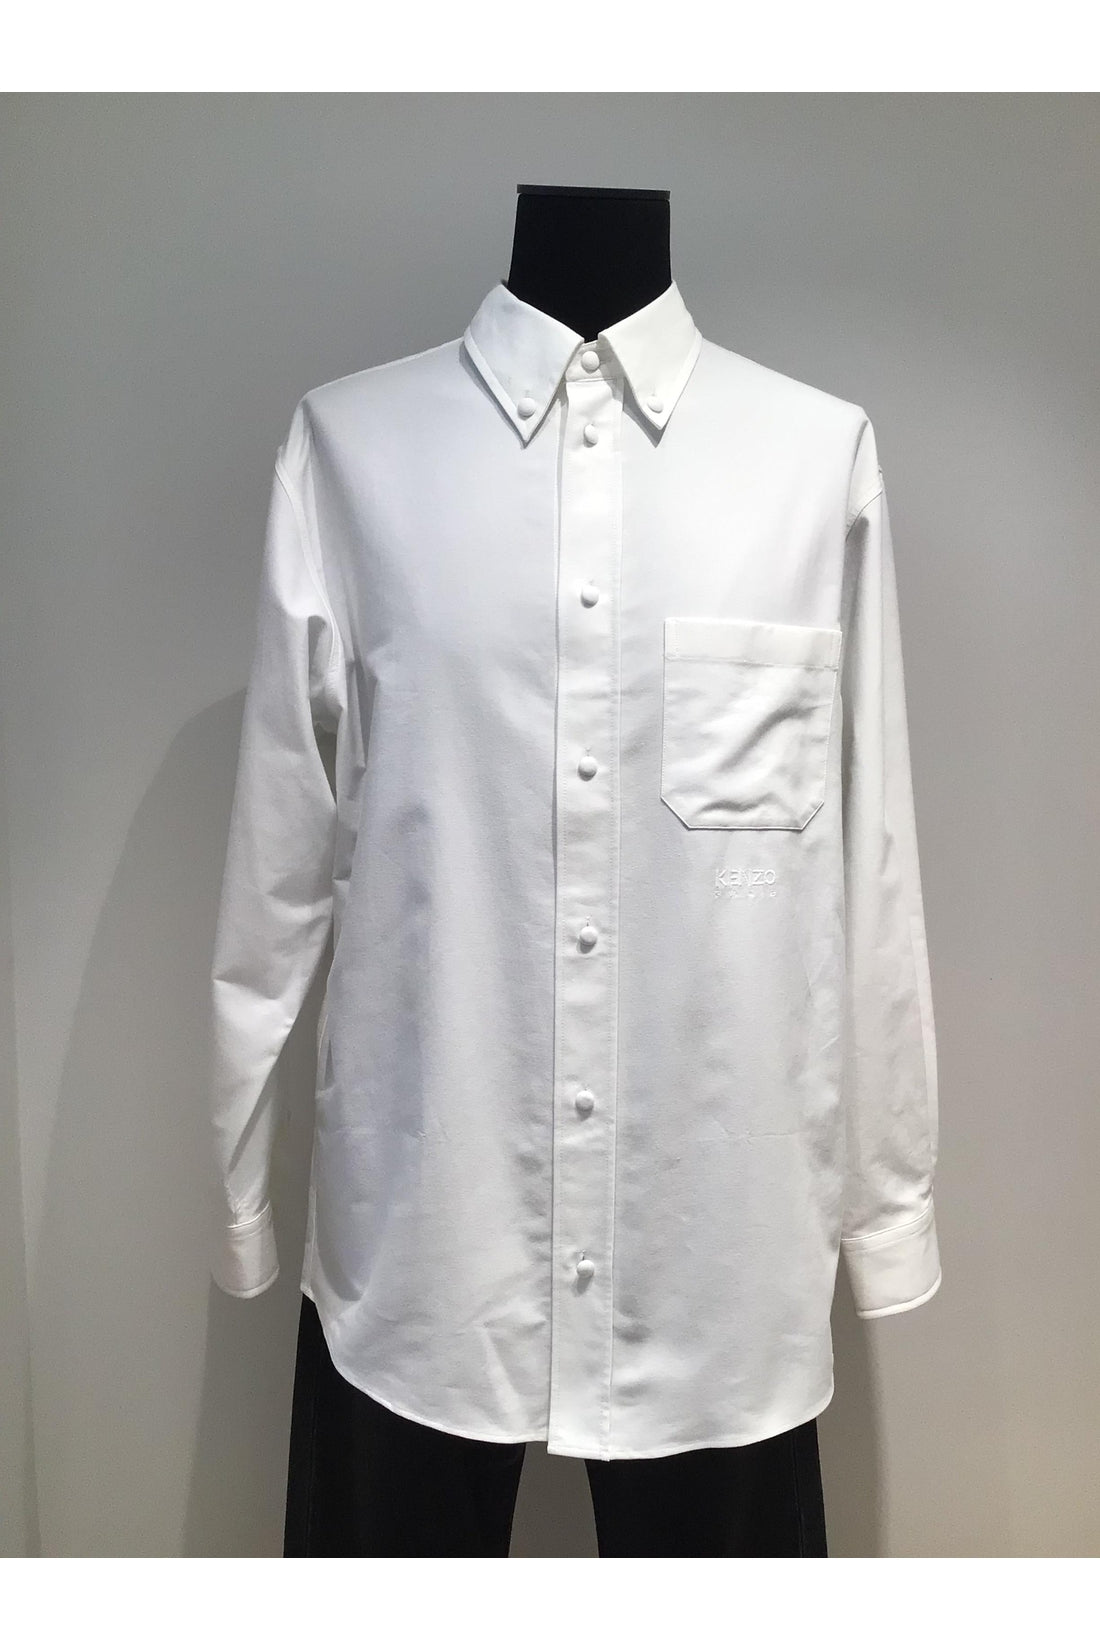 Kenzo-OUTLET-SALE-Cotton button-down shirt-ARCHIVIST